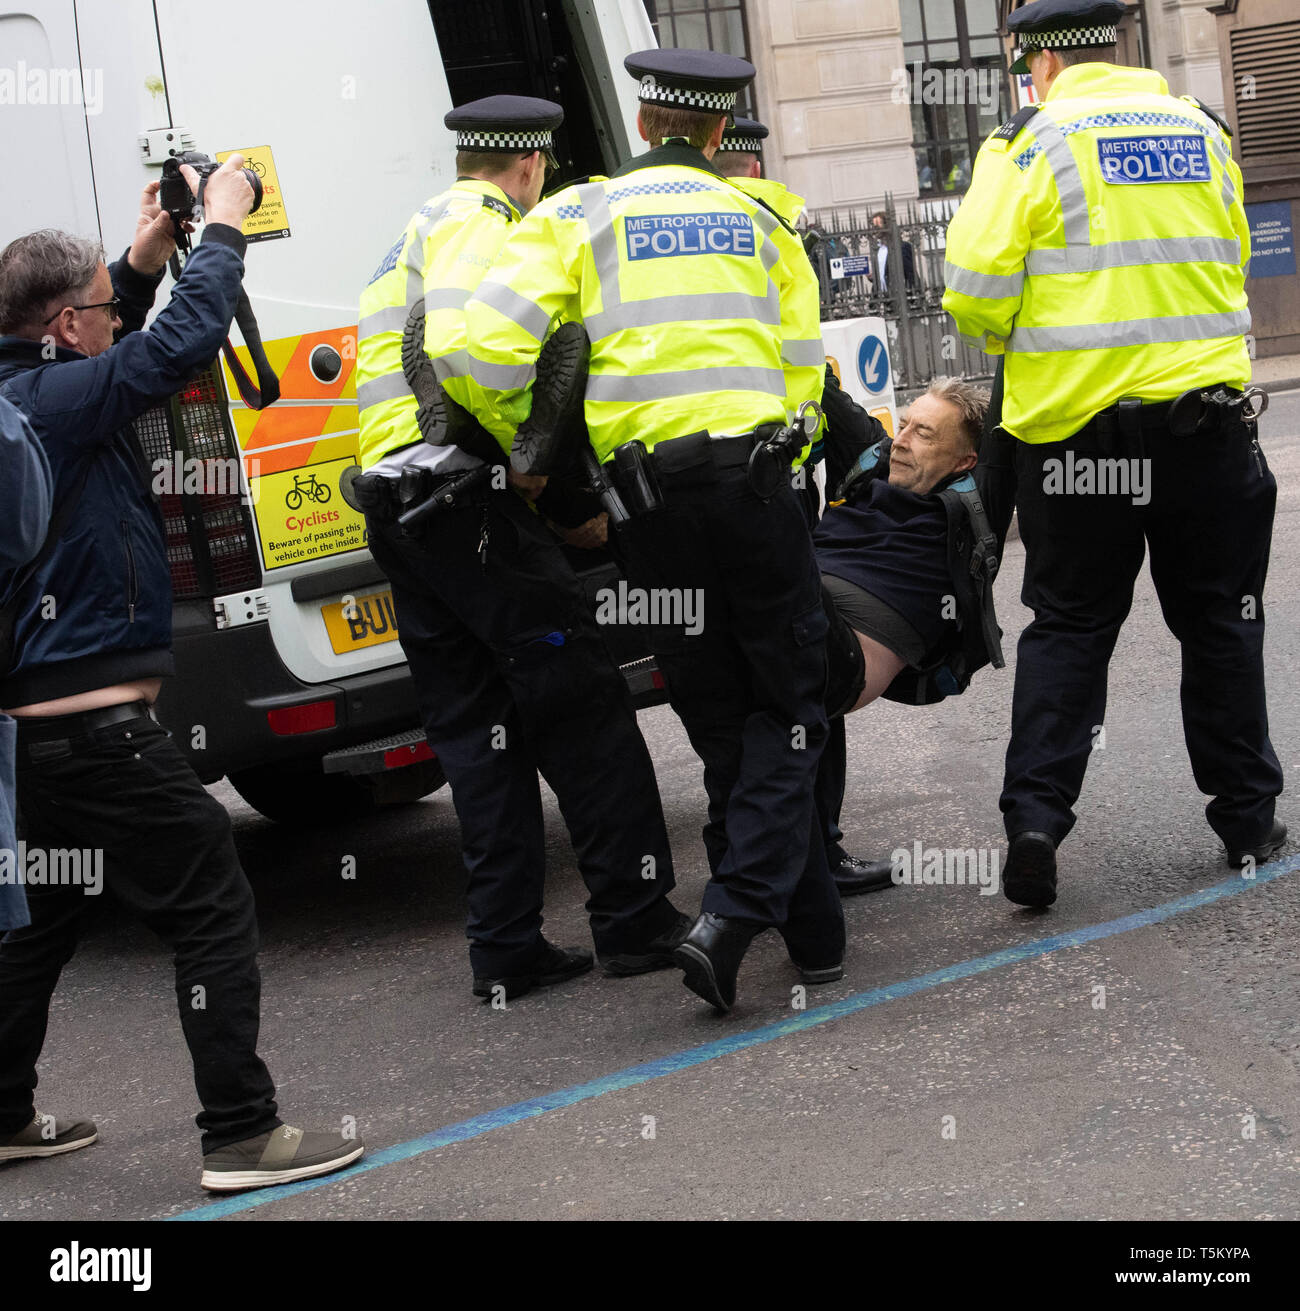 Londres, Royaume-Uni. 25 avr 2019. La police arrête rébellion Extinction protestataires à la jonction de la Banque dans la ville de Londres pour obstruction à l'autoroute Crédit : Ian Davidson/Alamy Live News Banque D'Images